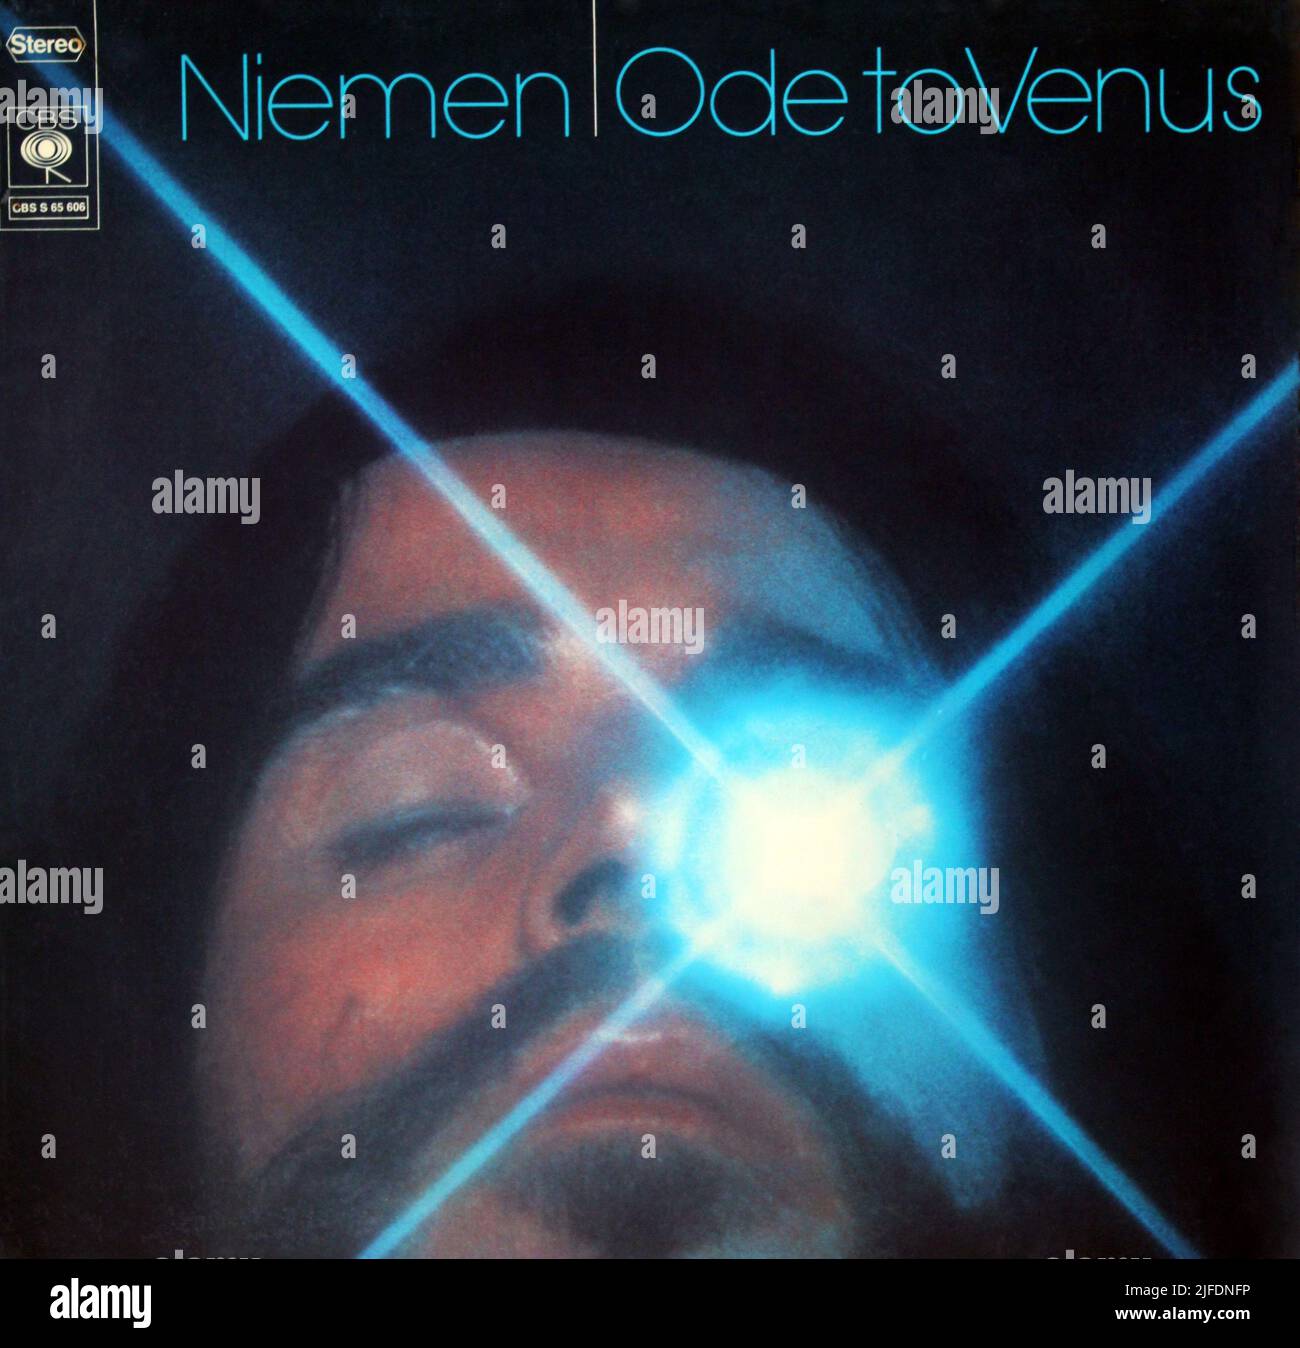 Niemen: 1973. LP front cover 'Ode to Venus' Stock Photo